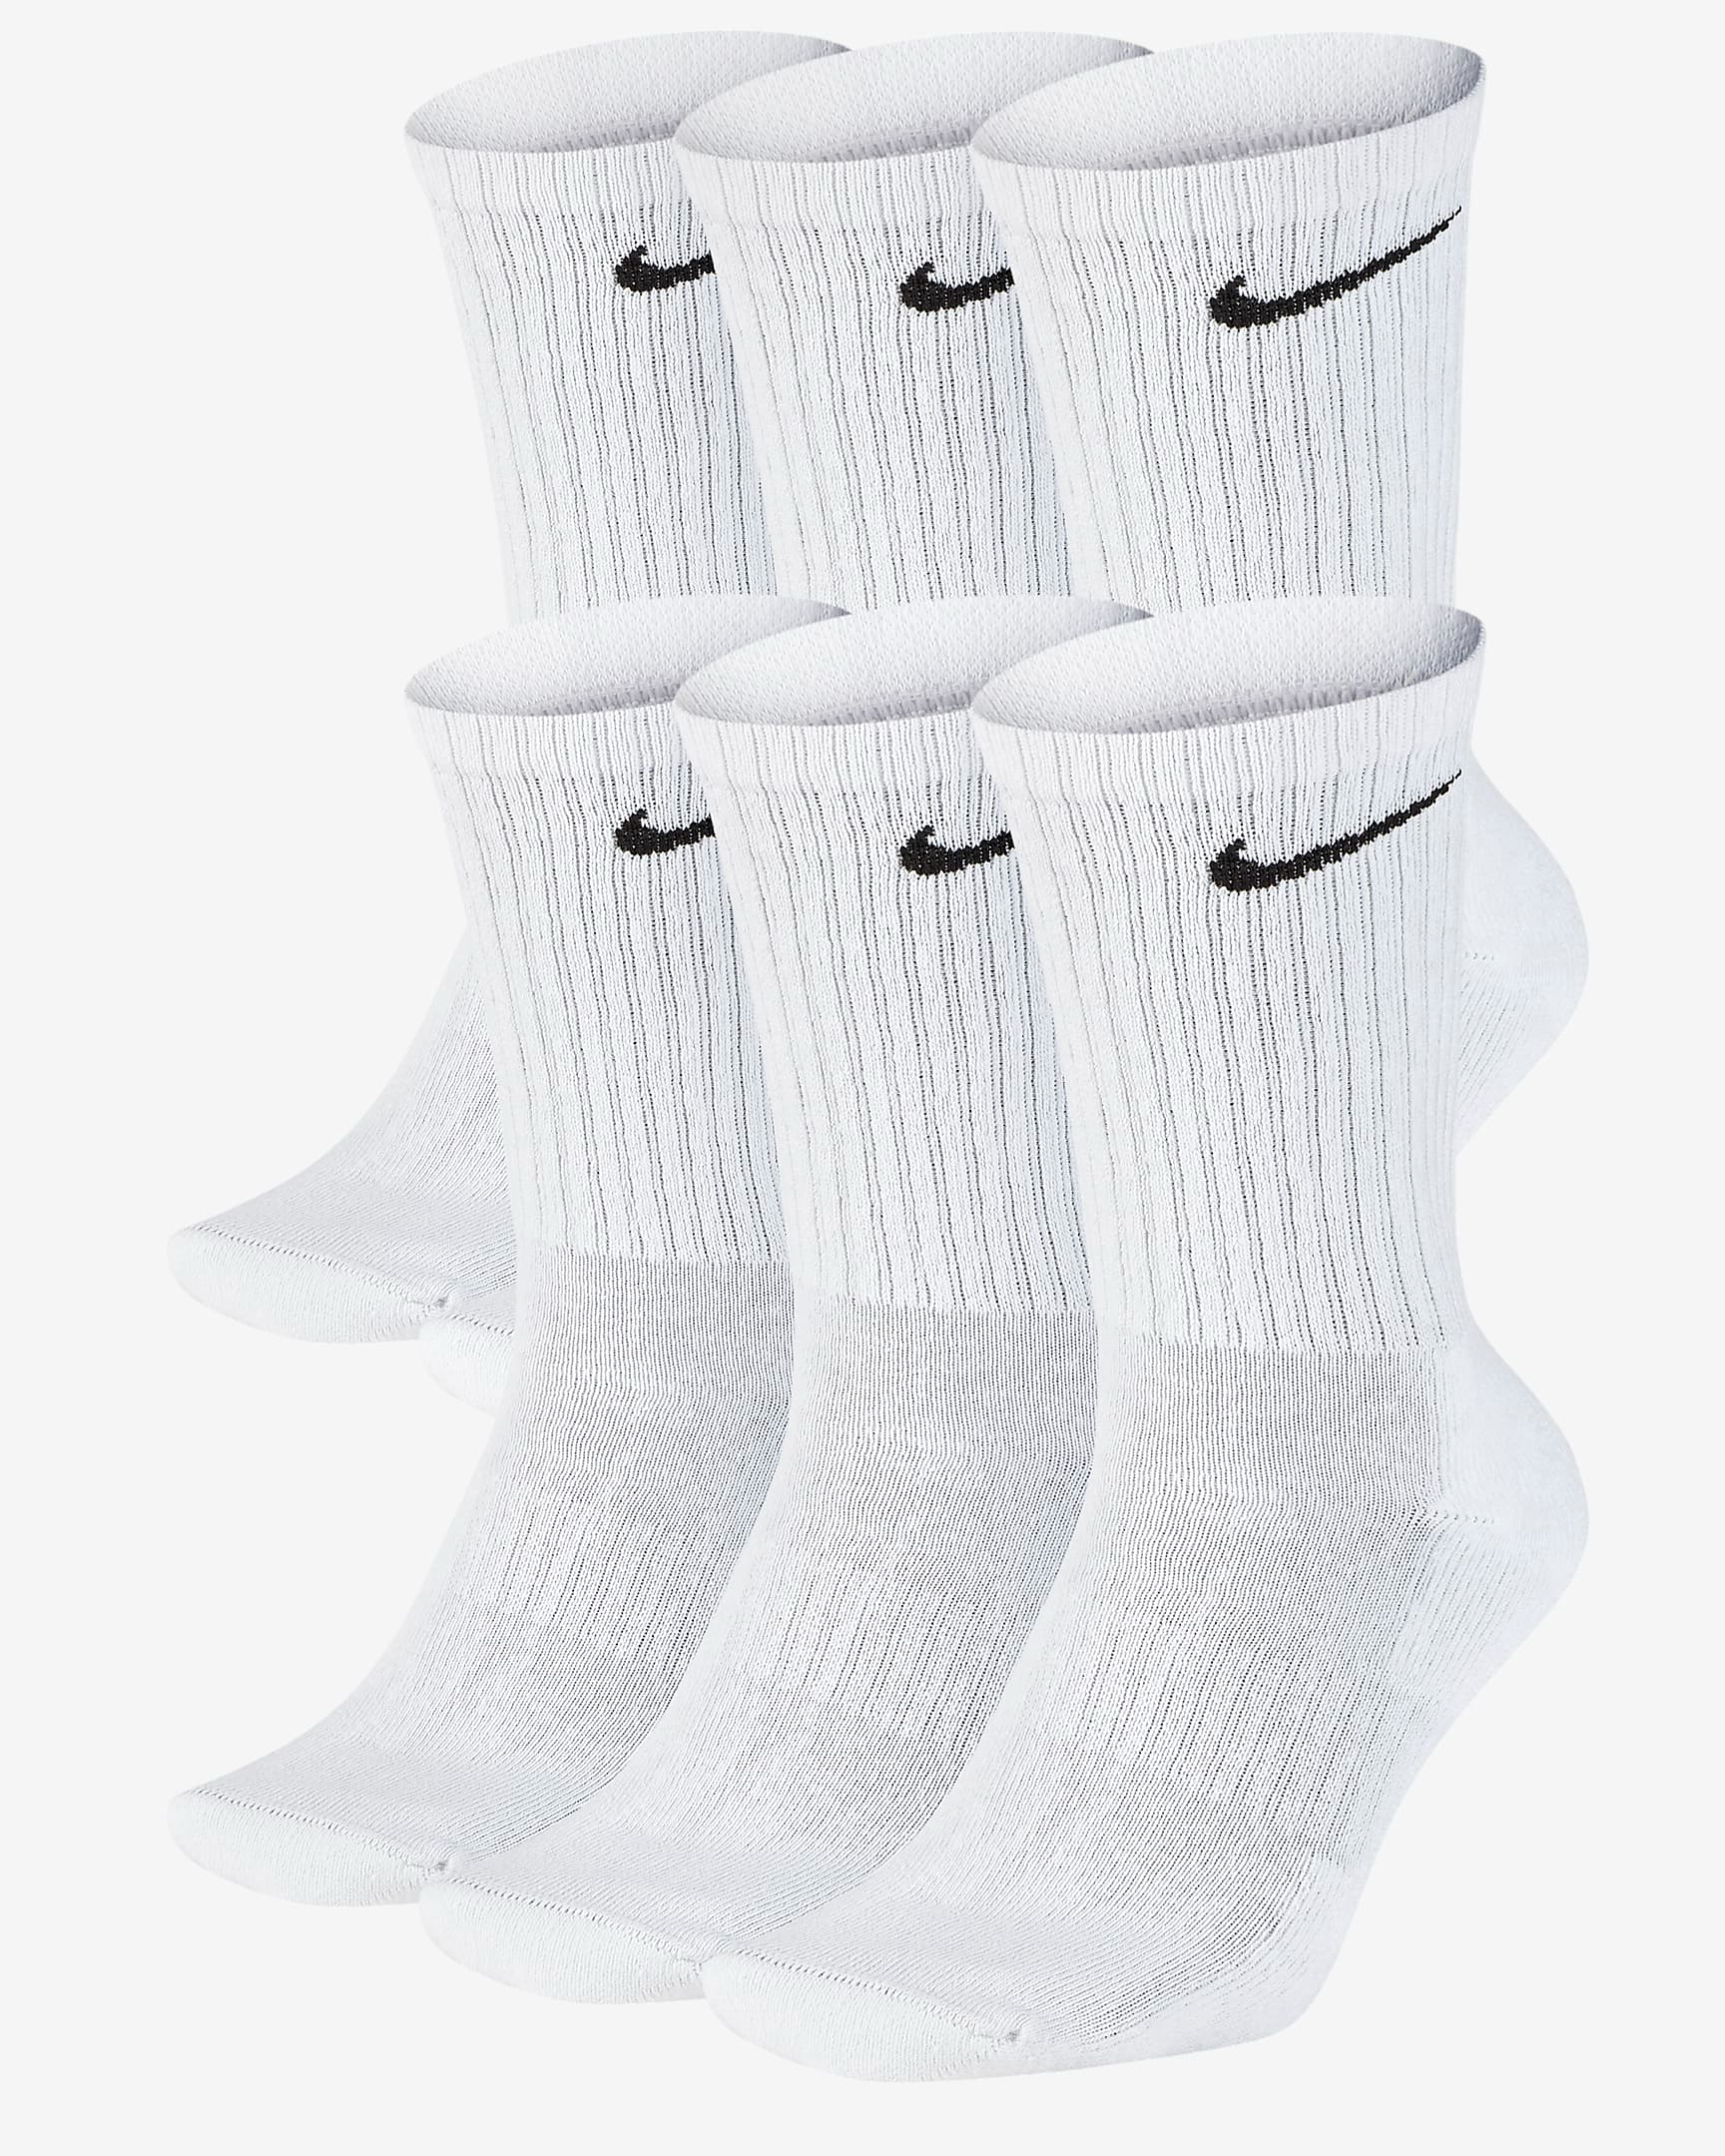 nike mid calf socks white